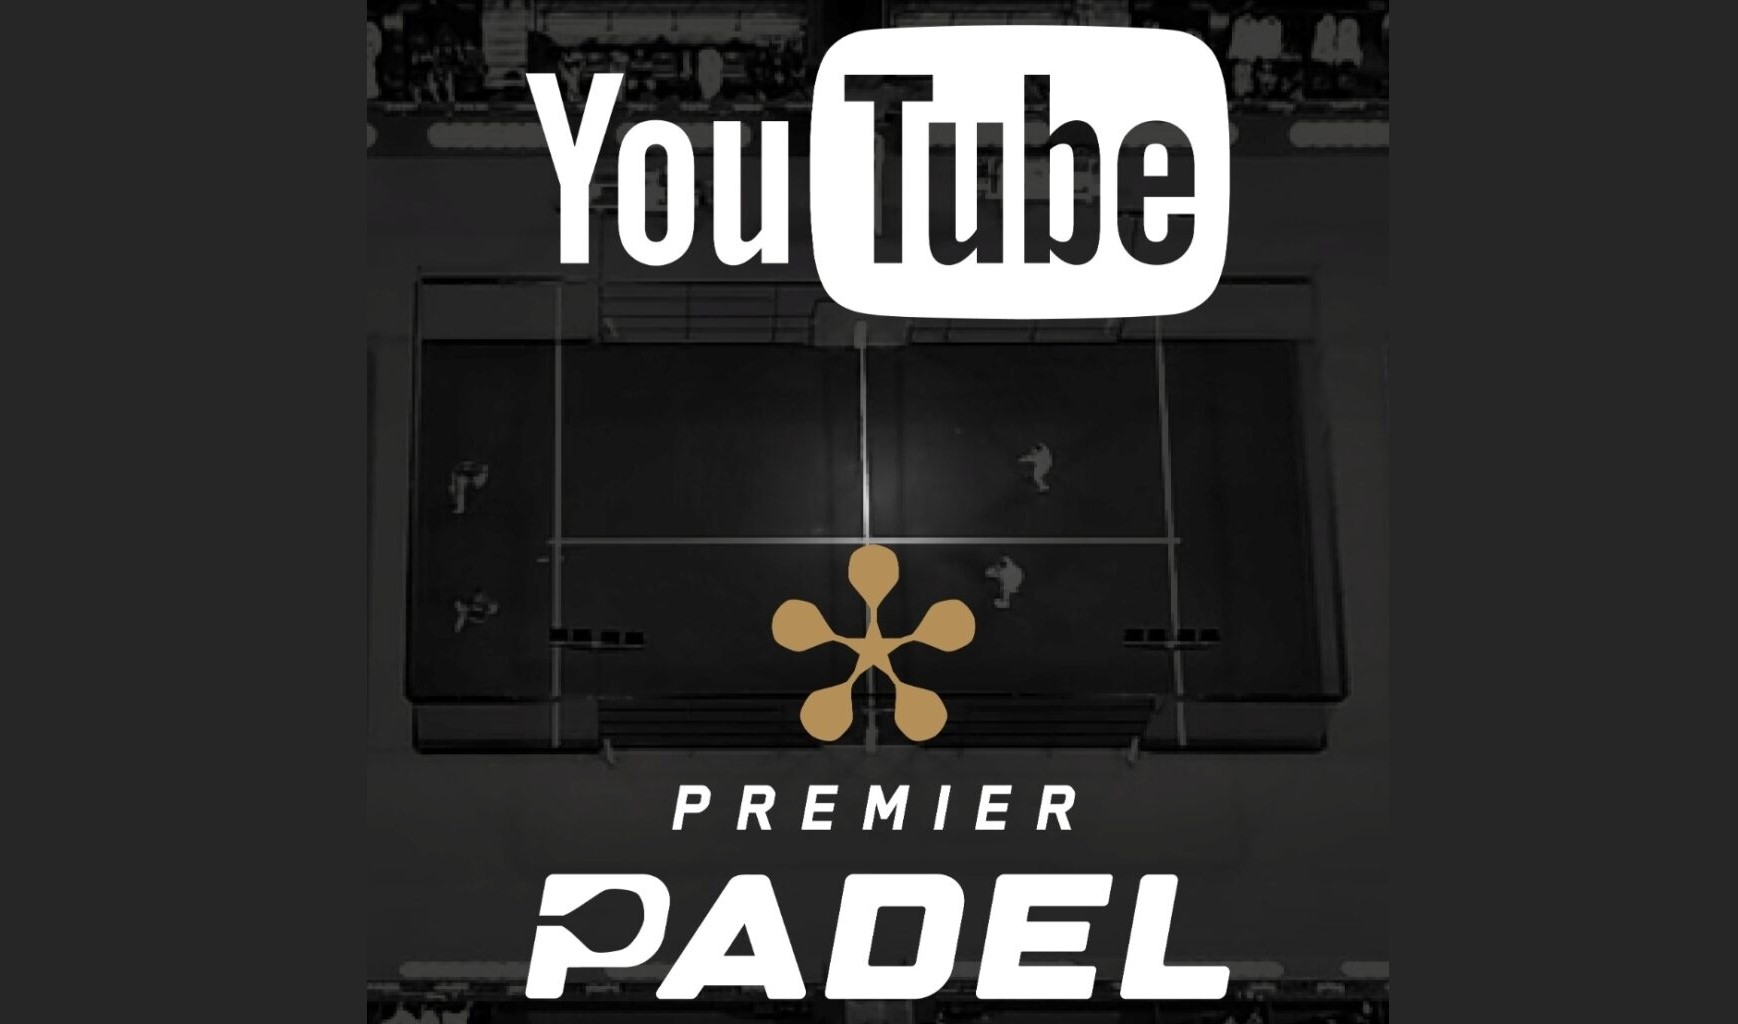 Premier Padel esitettiin Youtubessa Espanjassa